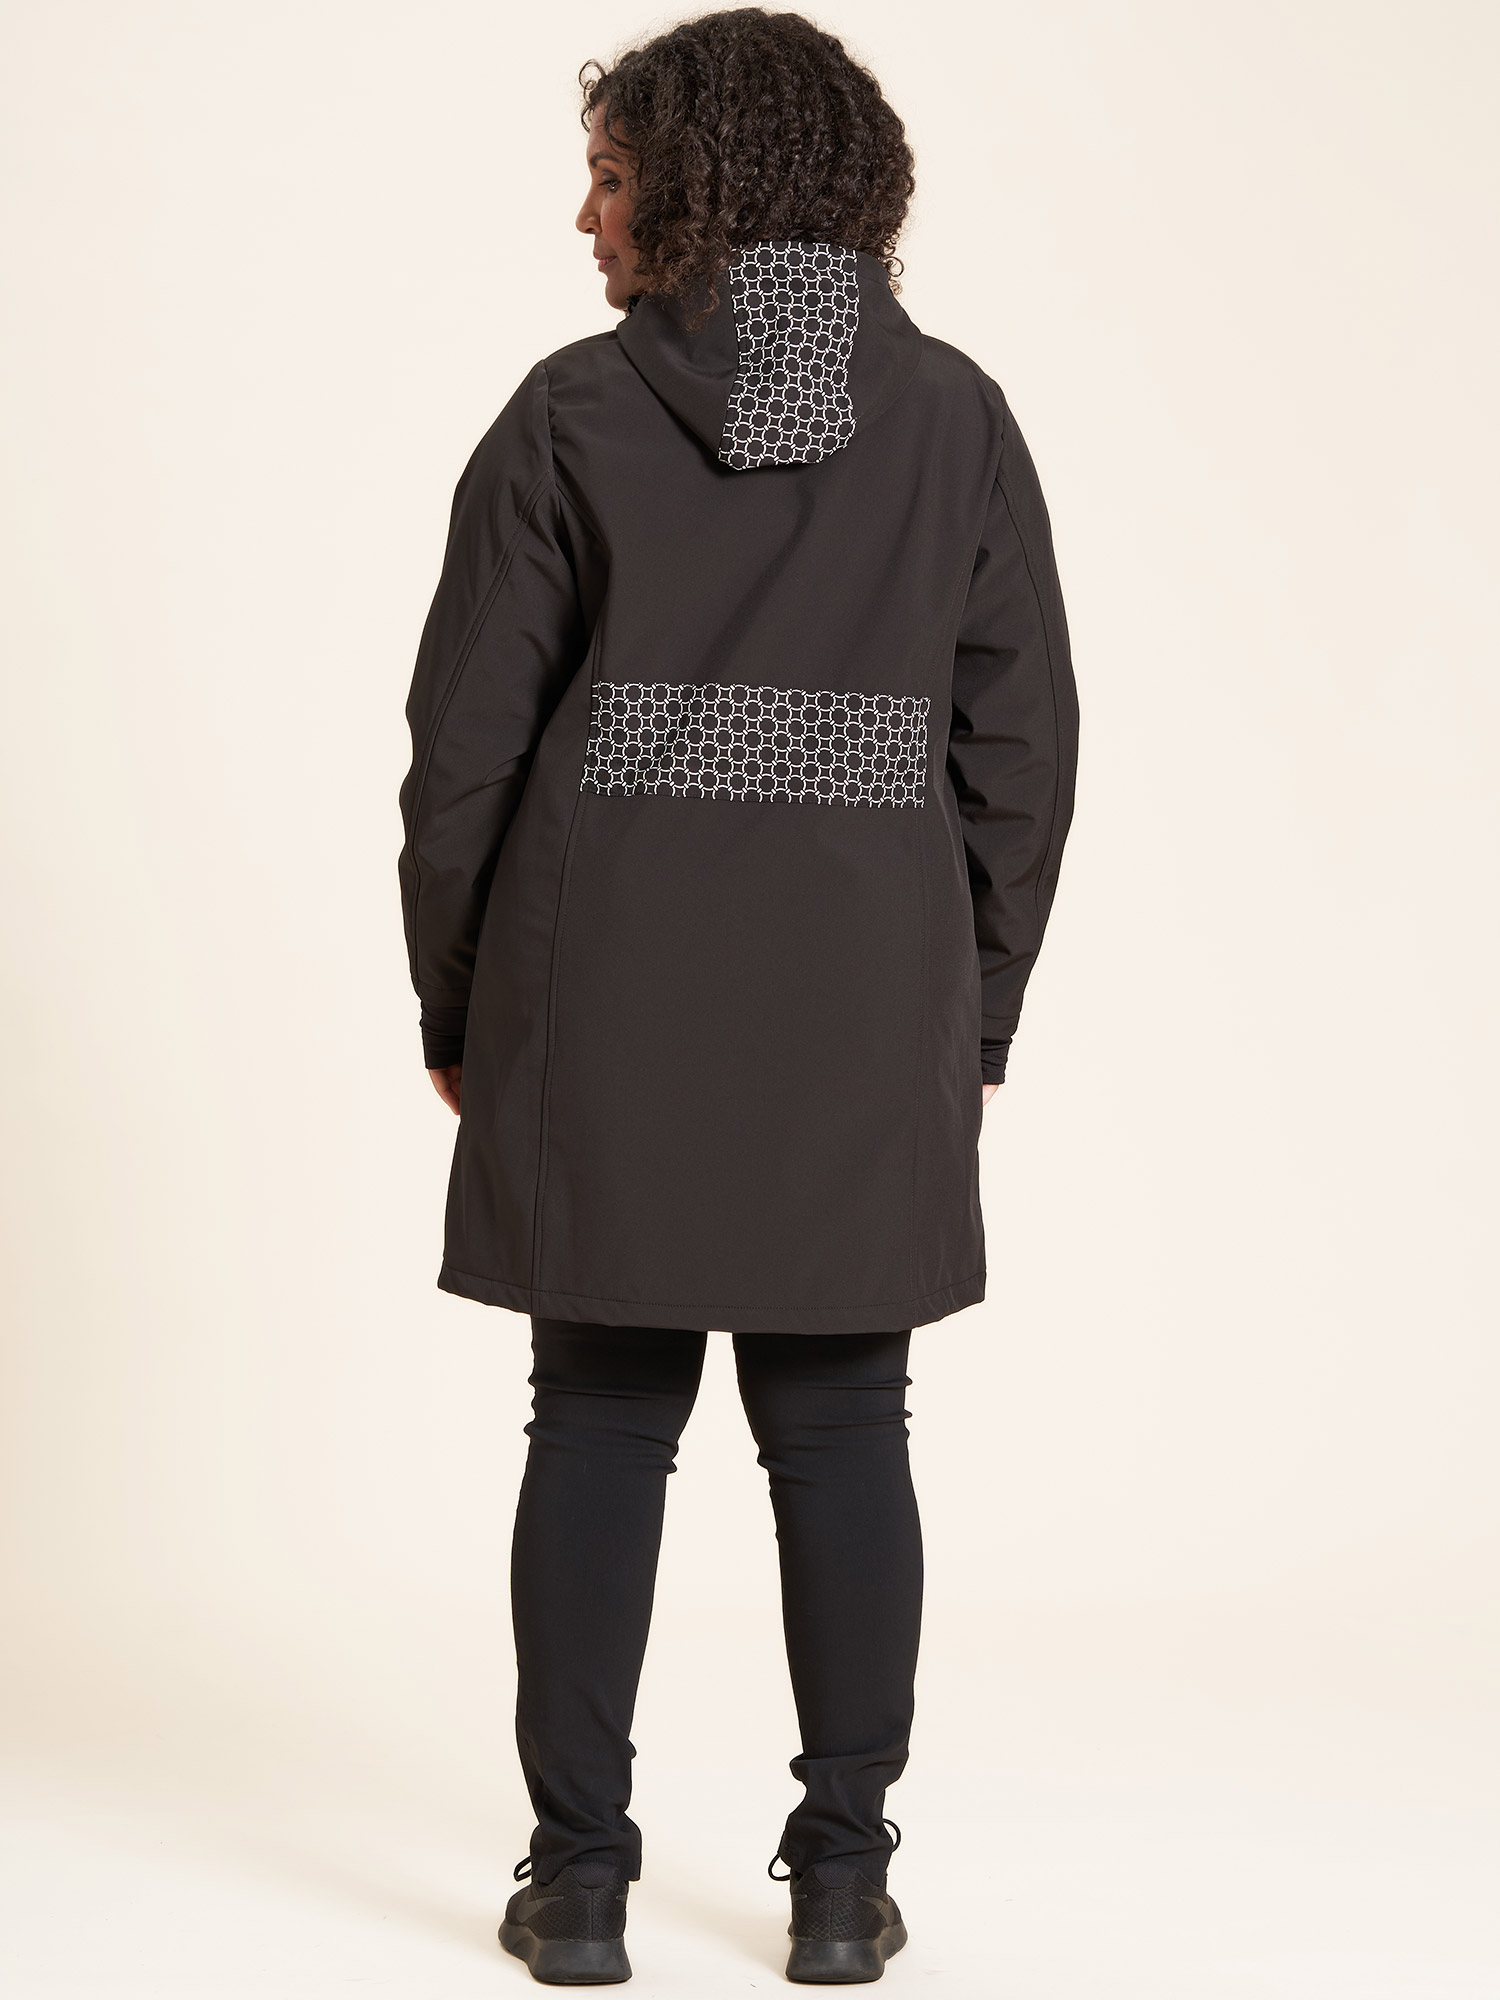 Lotte - Sort softshell jakke med flotte detaljer fra Studio